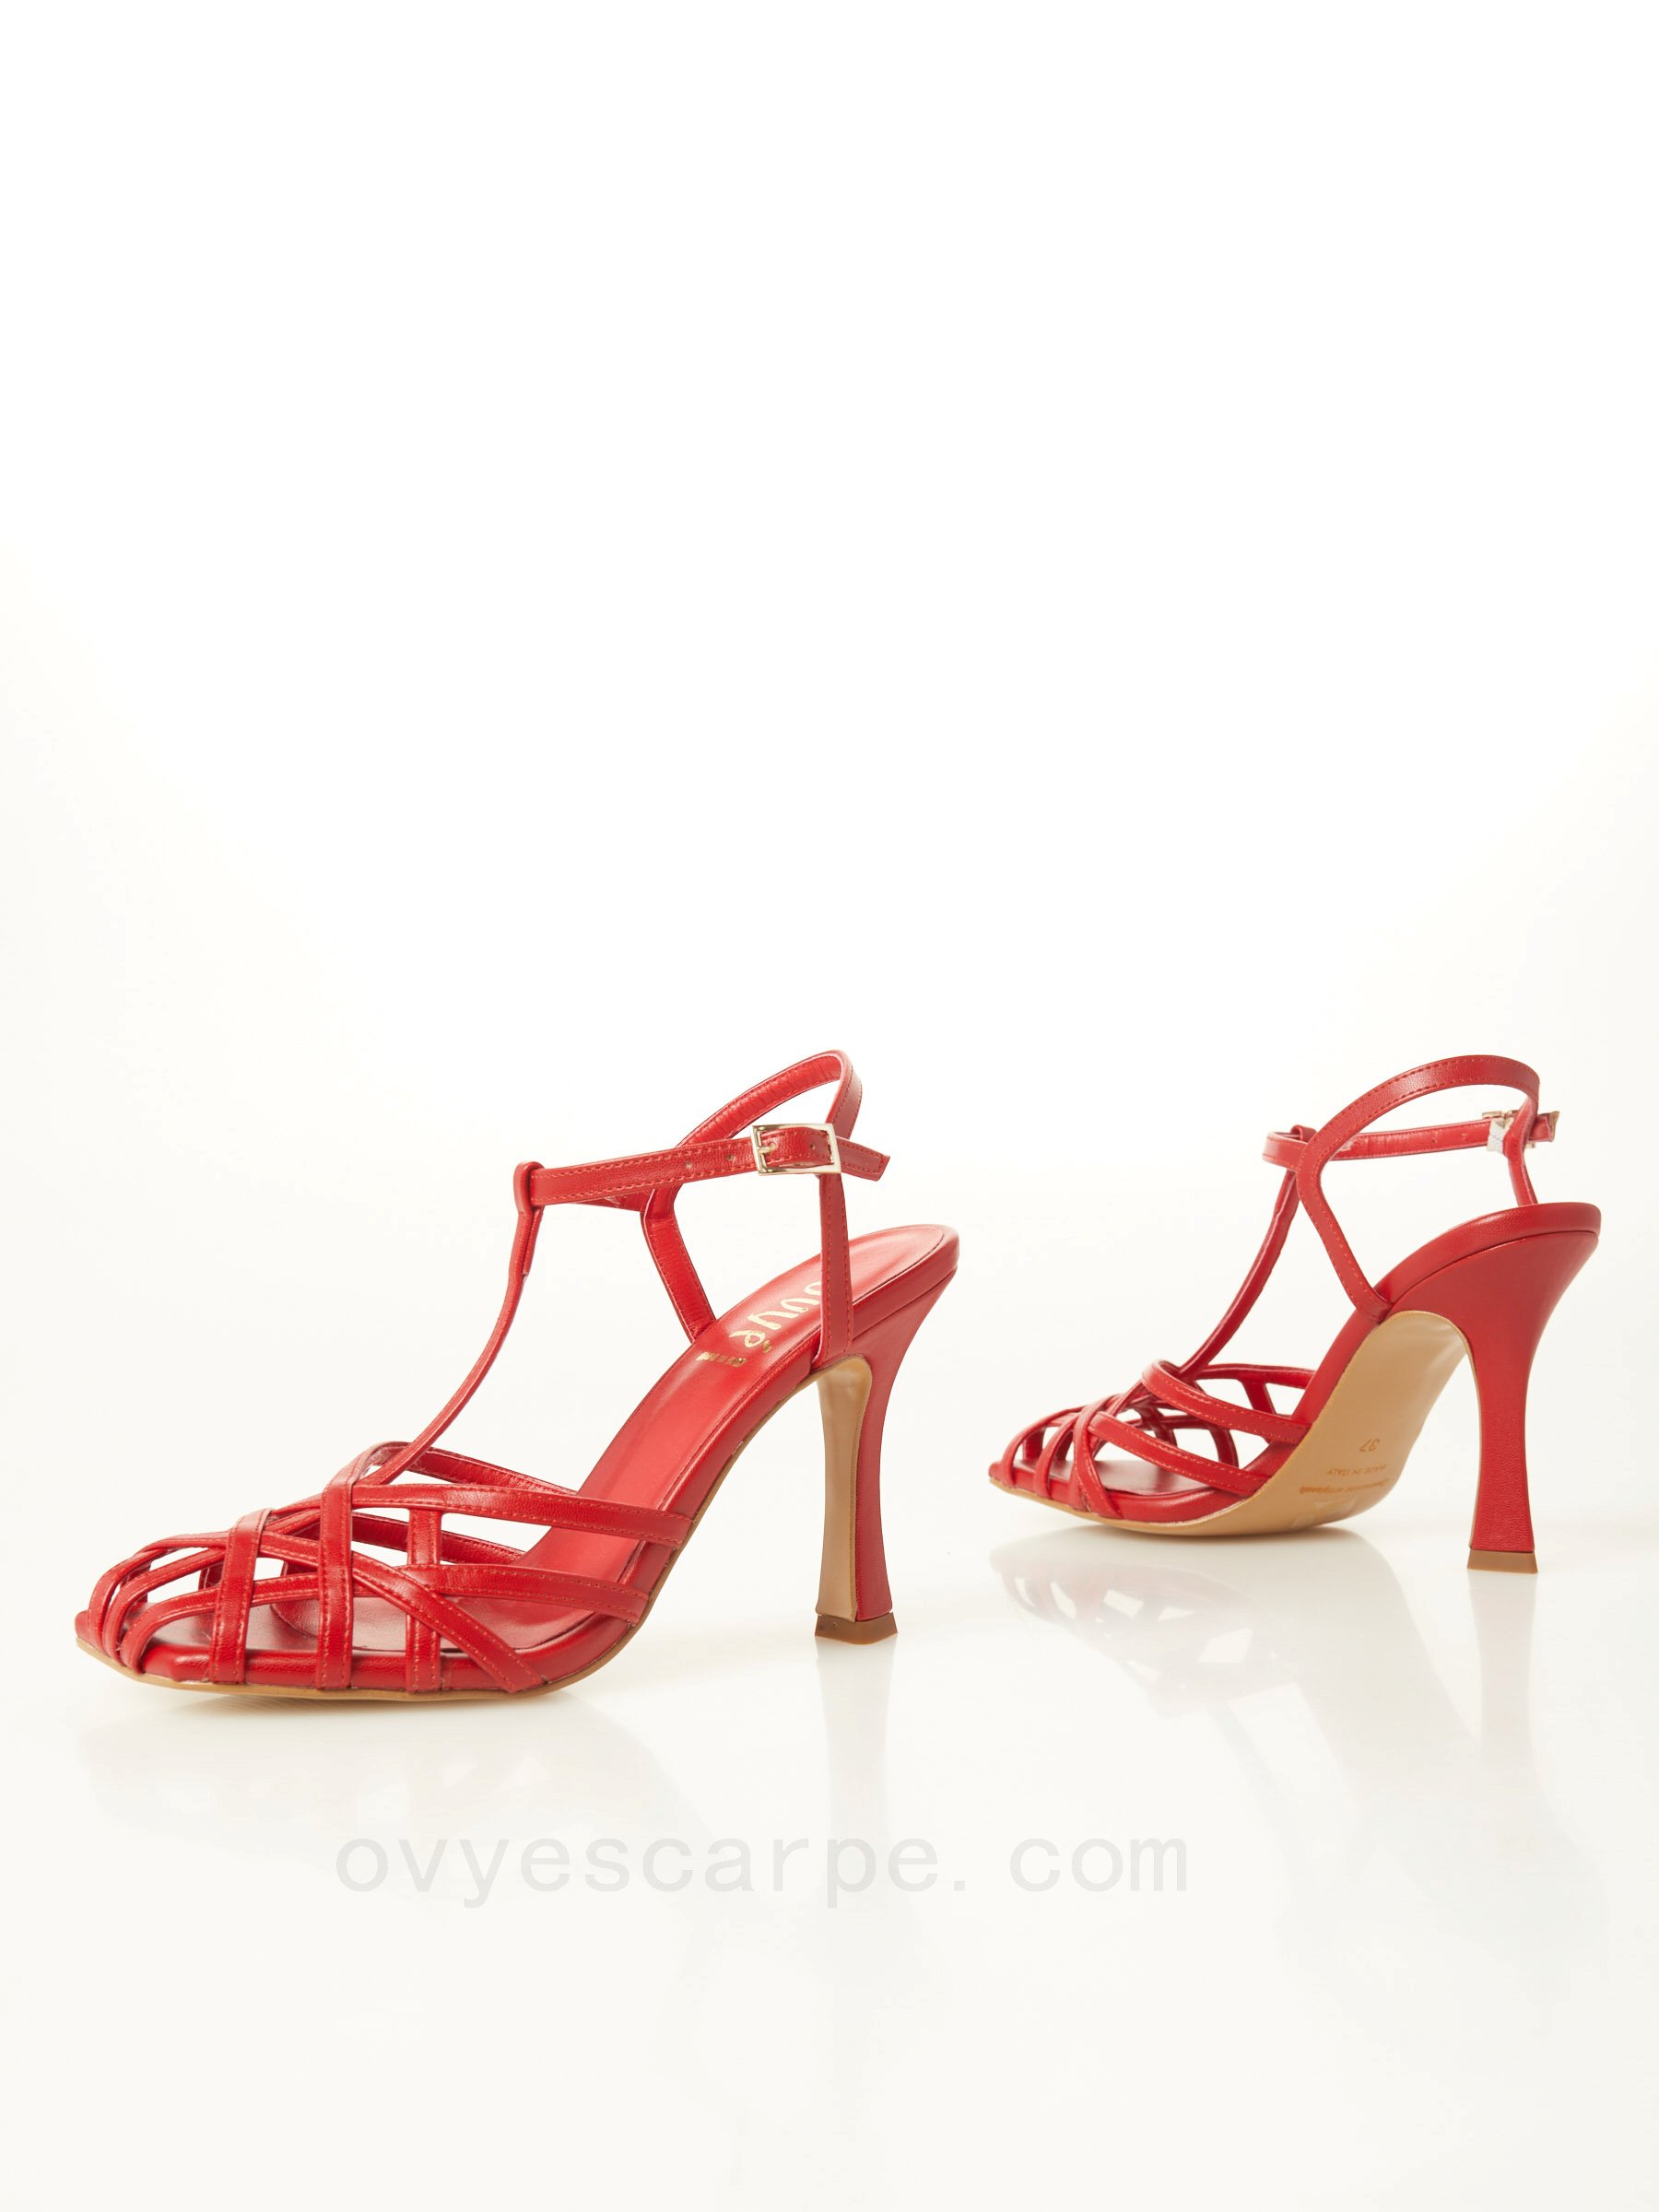 Spider Heel Sandal F08161027-0649 scarpe ovy&#232; saldi